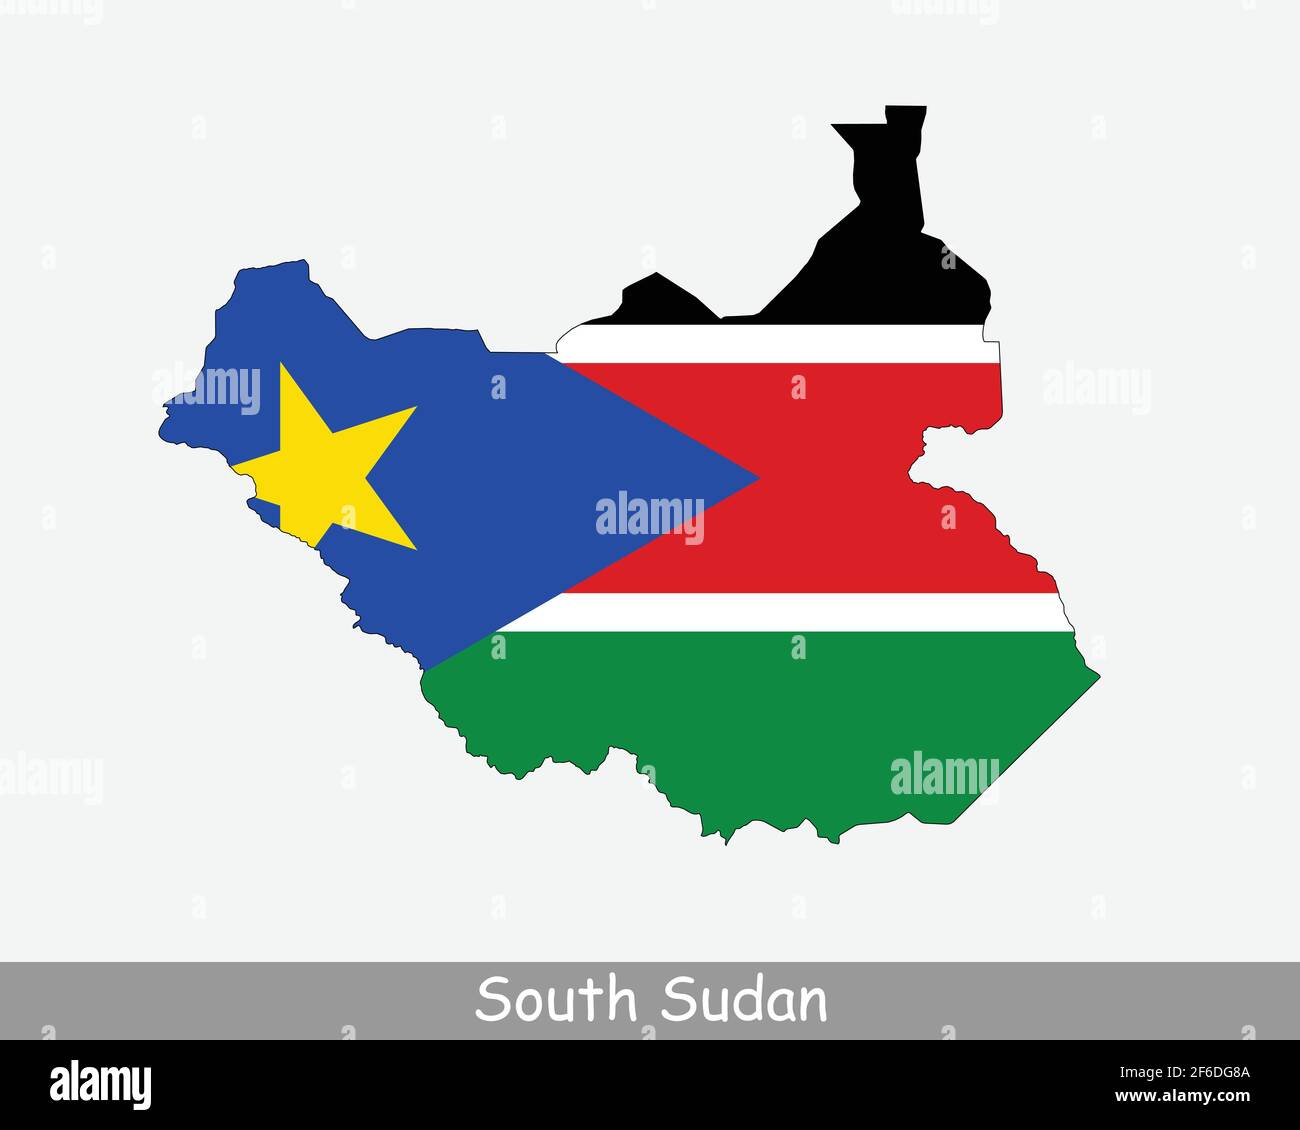 Südsudan Flagge Karte. Karte der Republik Südsudan mit der südsudanesischen Nationalflagge isoliert auf weißem Hintergrund. Vektorgrafik. Stock Vektor